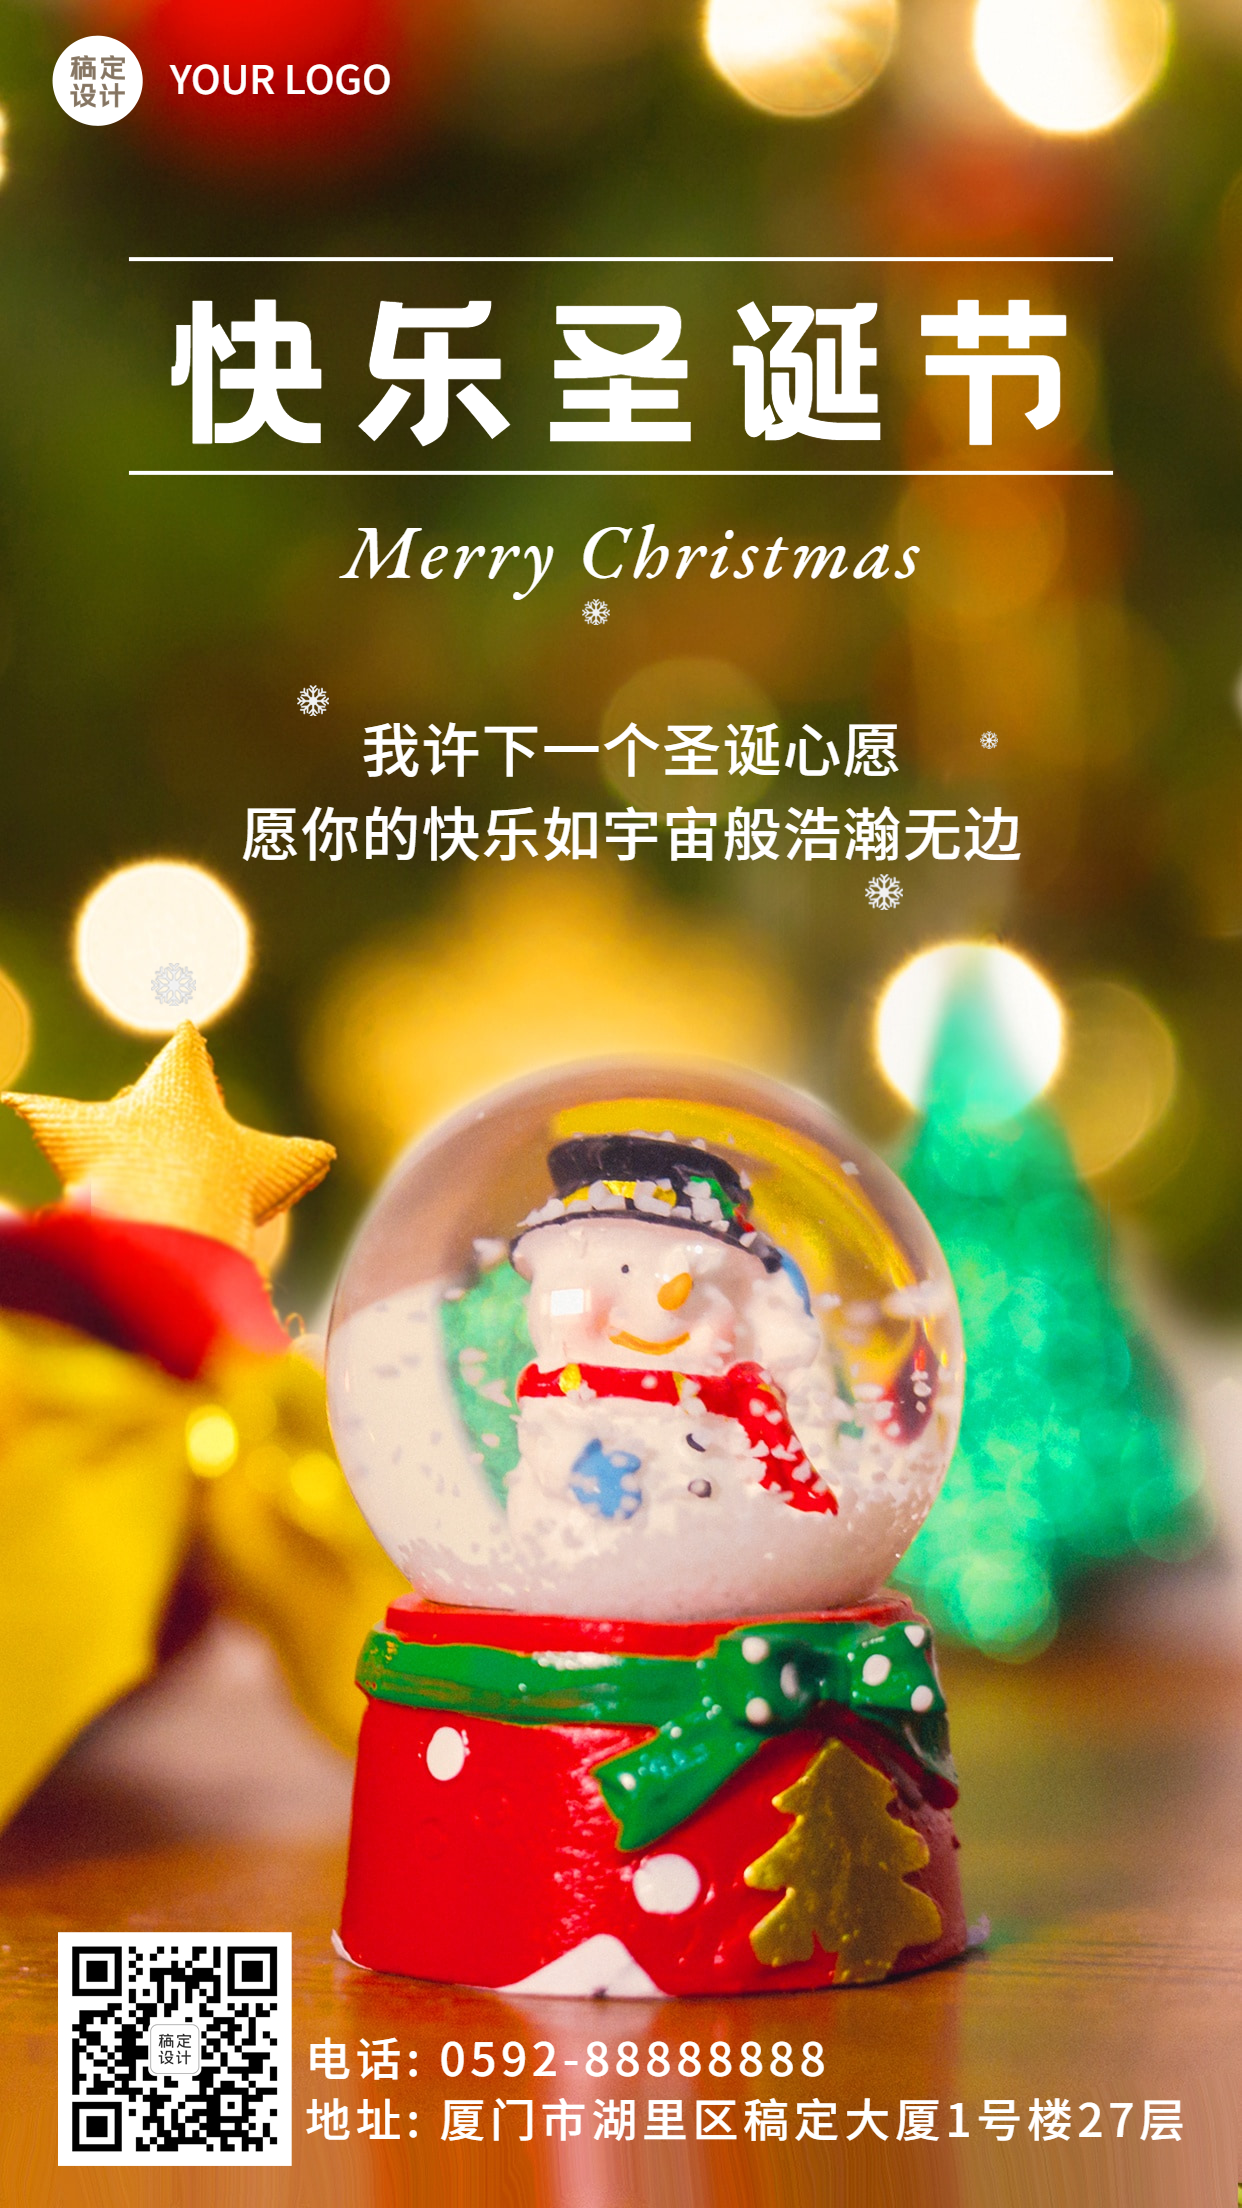 圣诞节祝福水晶球实景手机海报